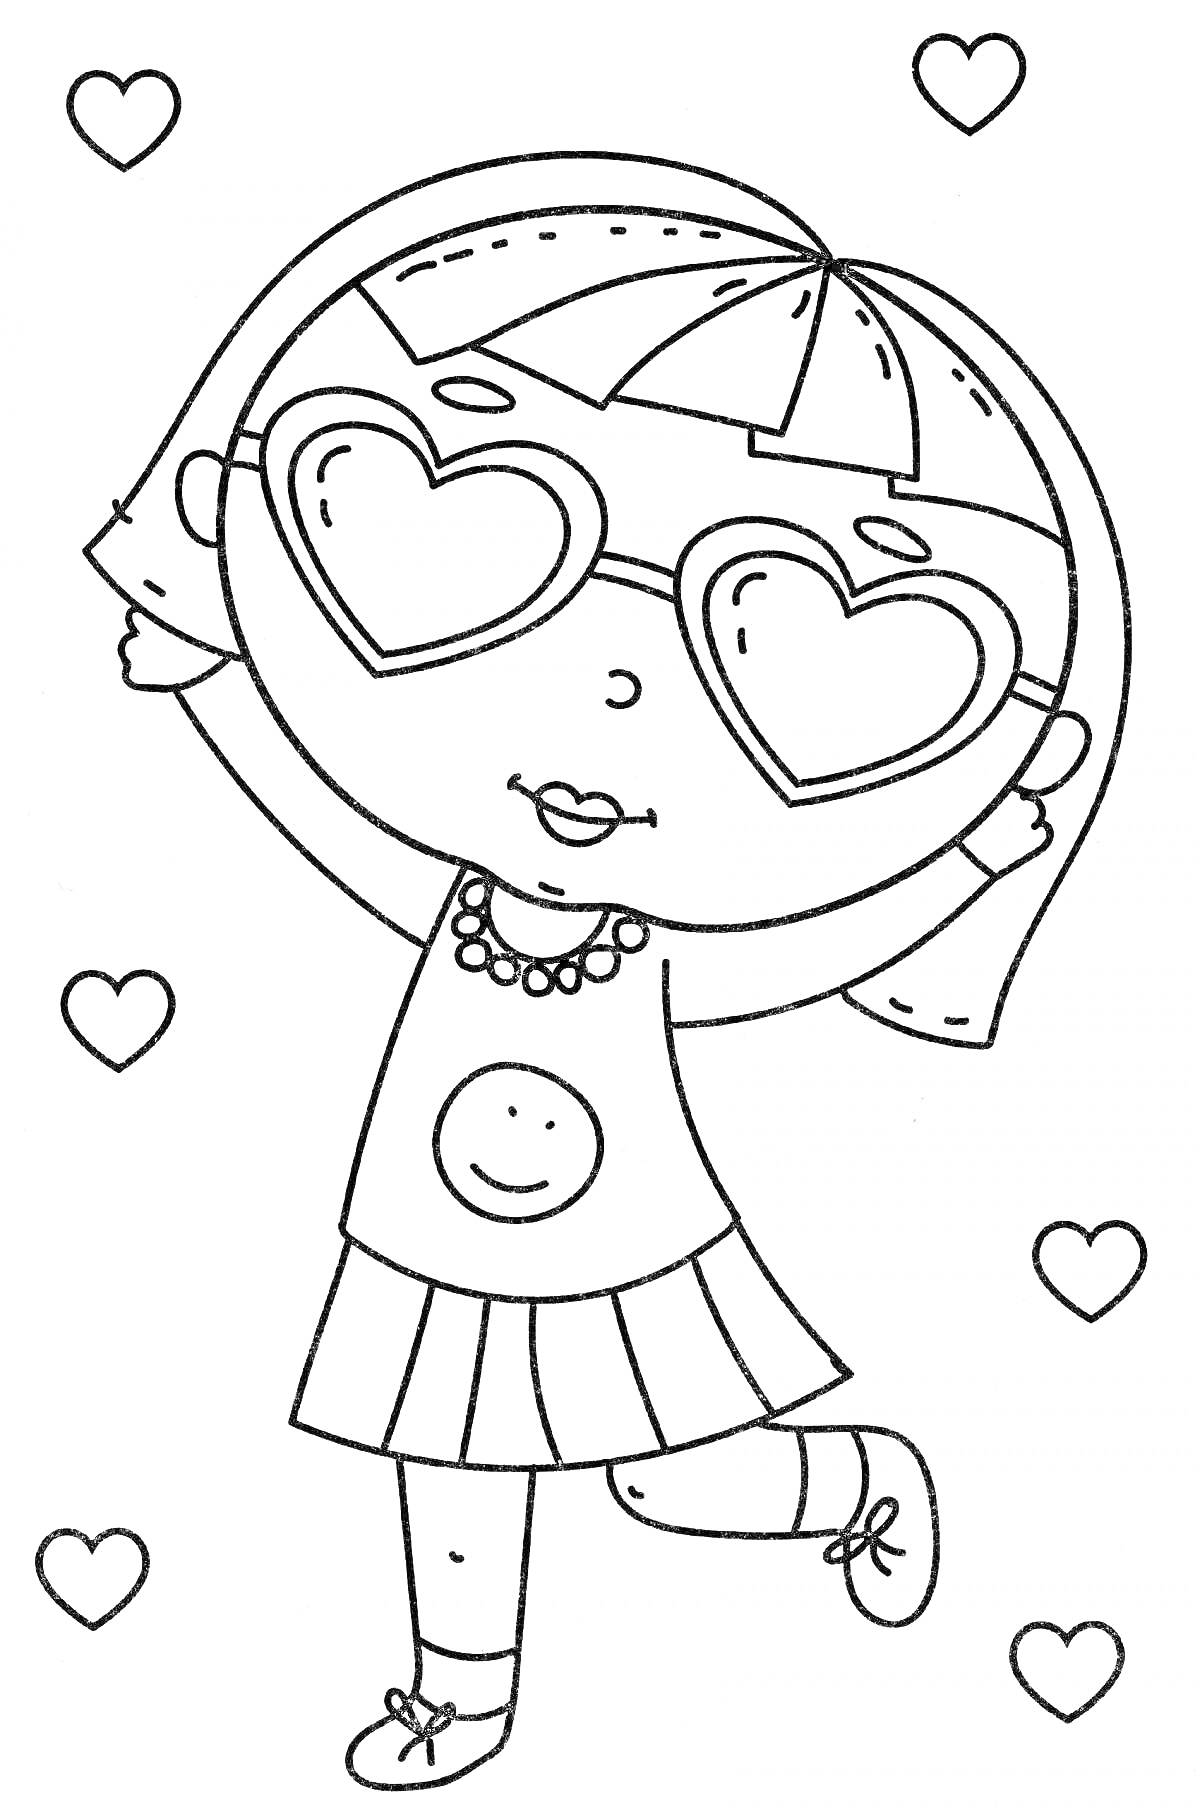 Раскраска Девочка в сердцах с очками в форме сердечек